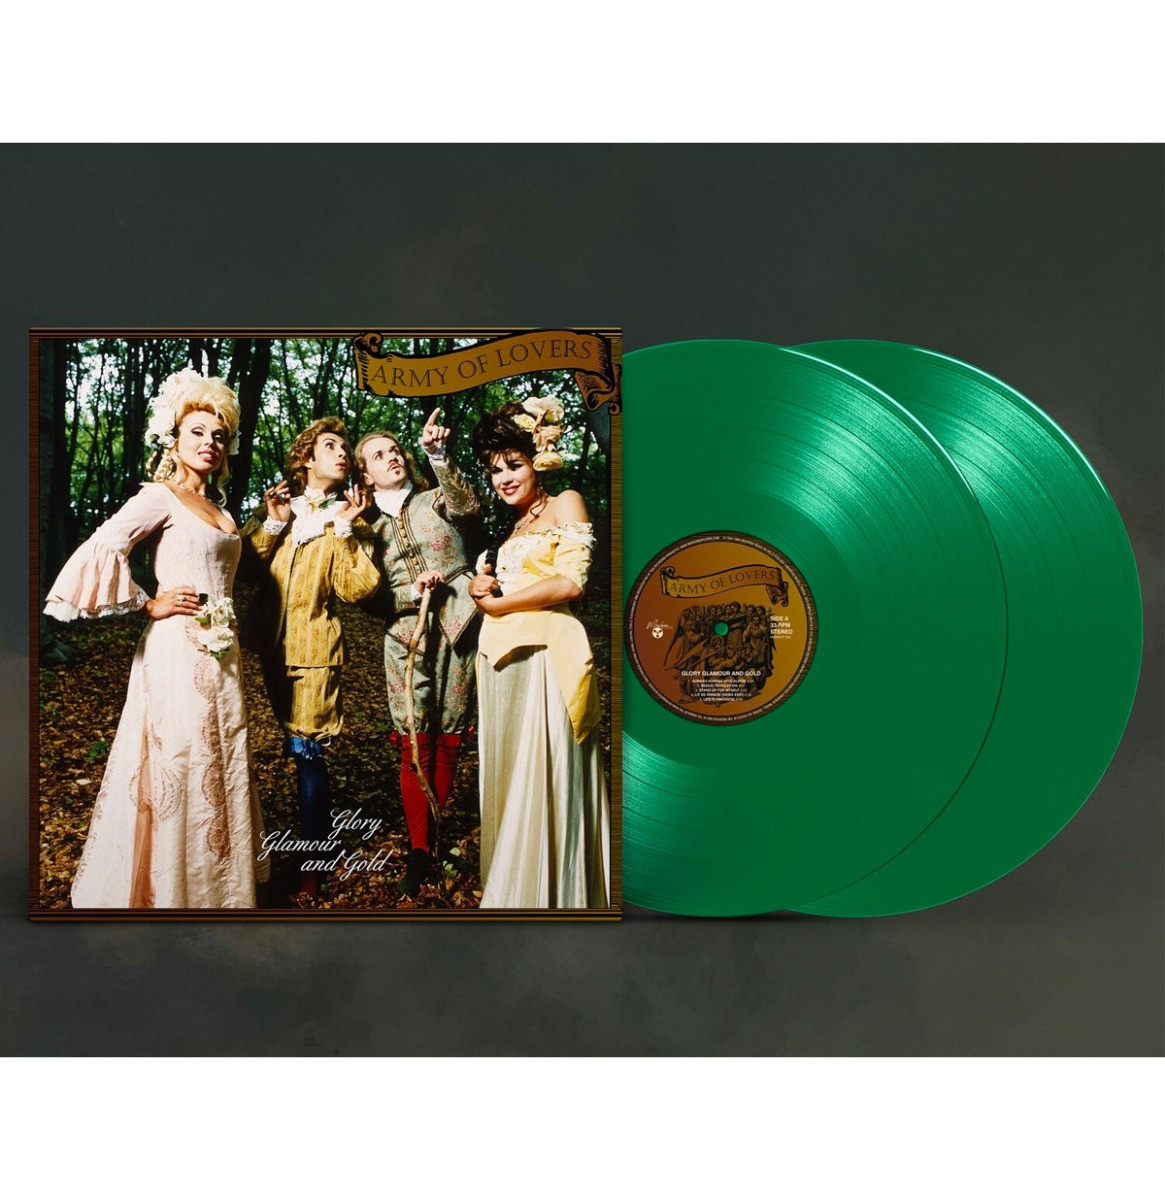 Army Of Lovers - Glory Glamour And Gold 2-LP (Groen Vinyl) ZEER GELIMITEERD